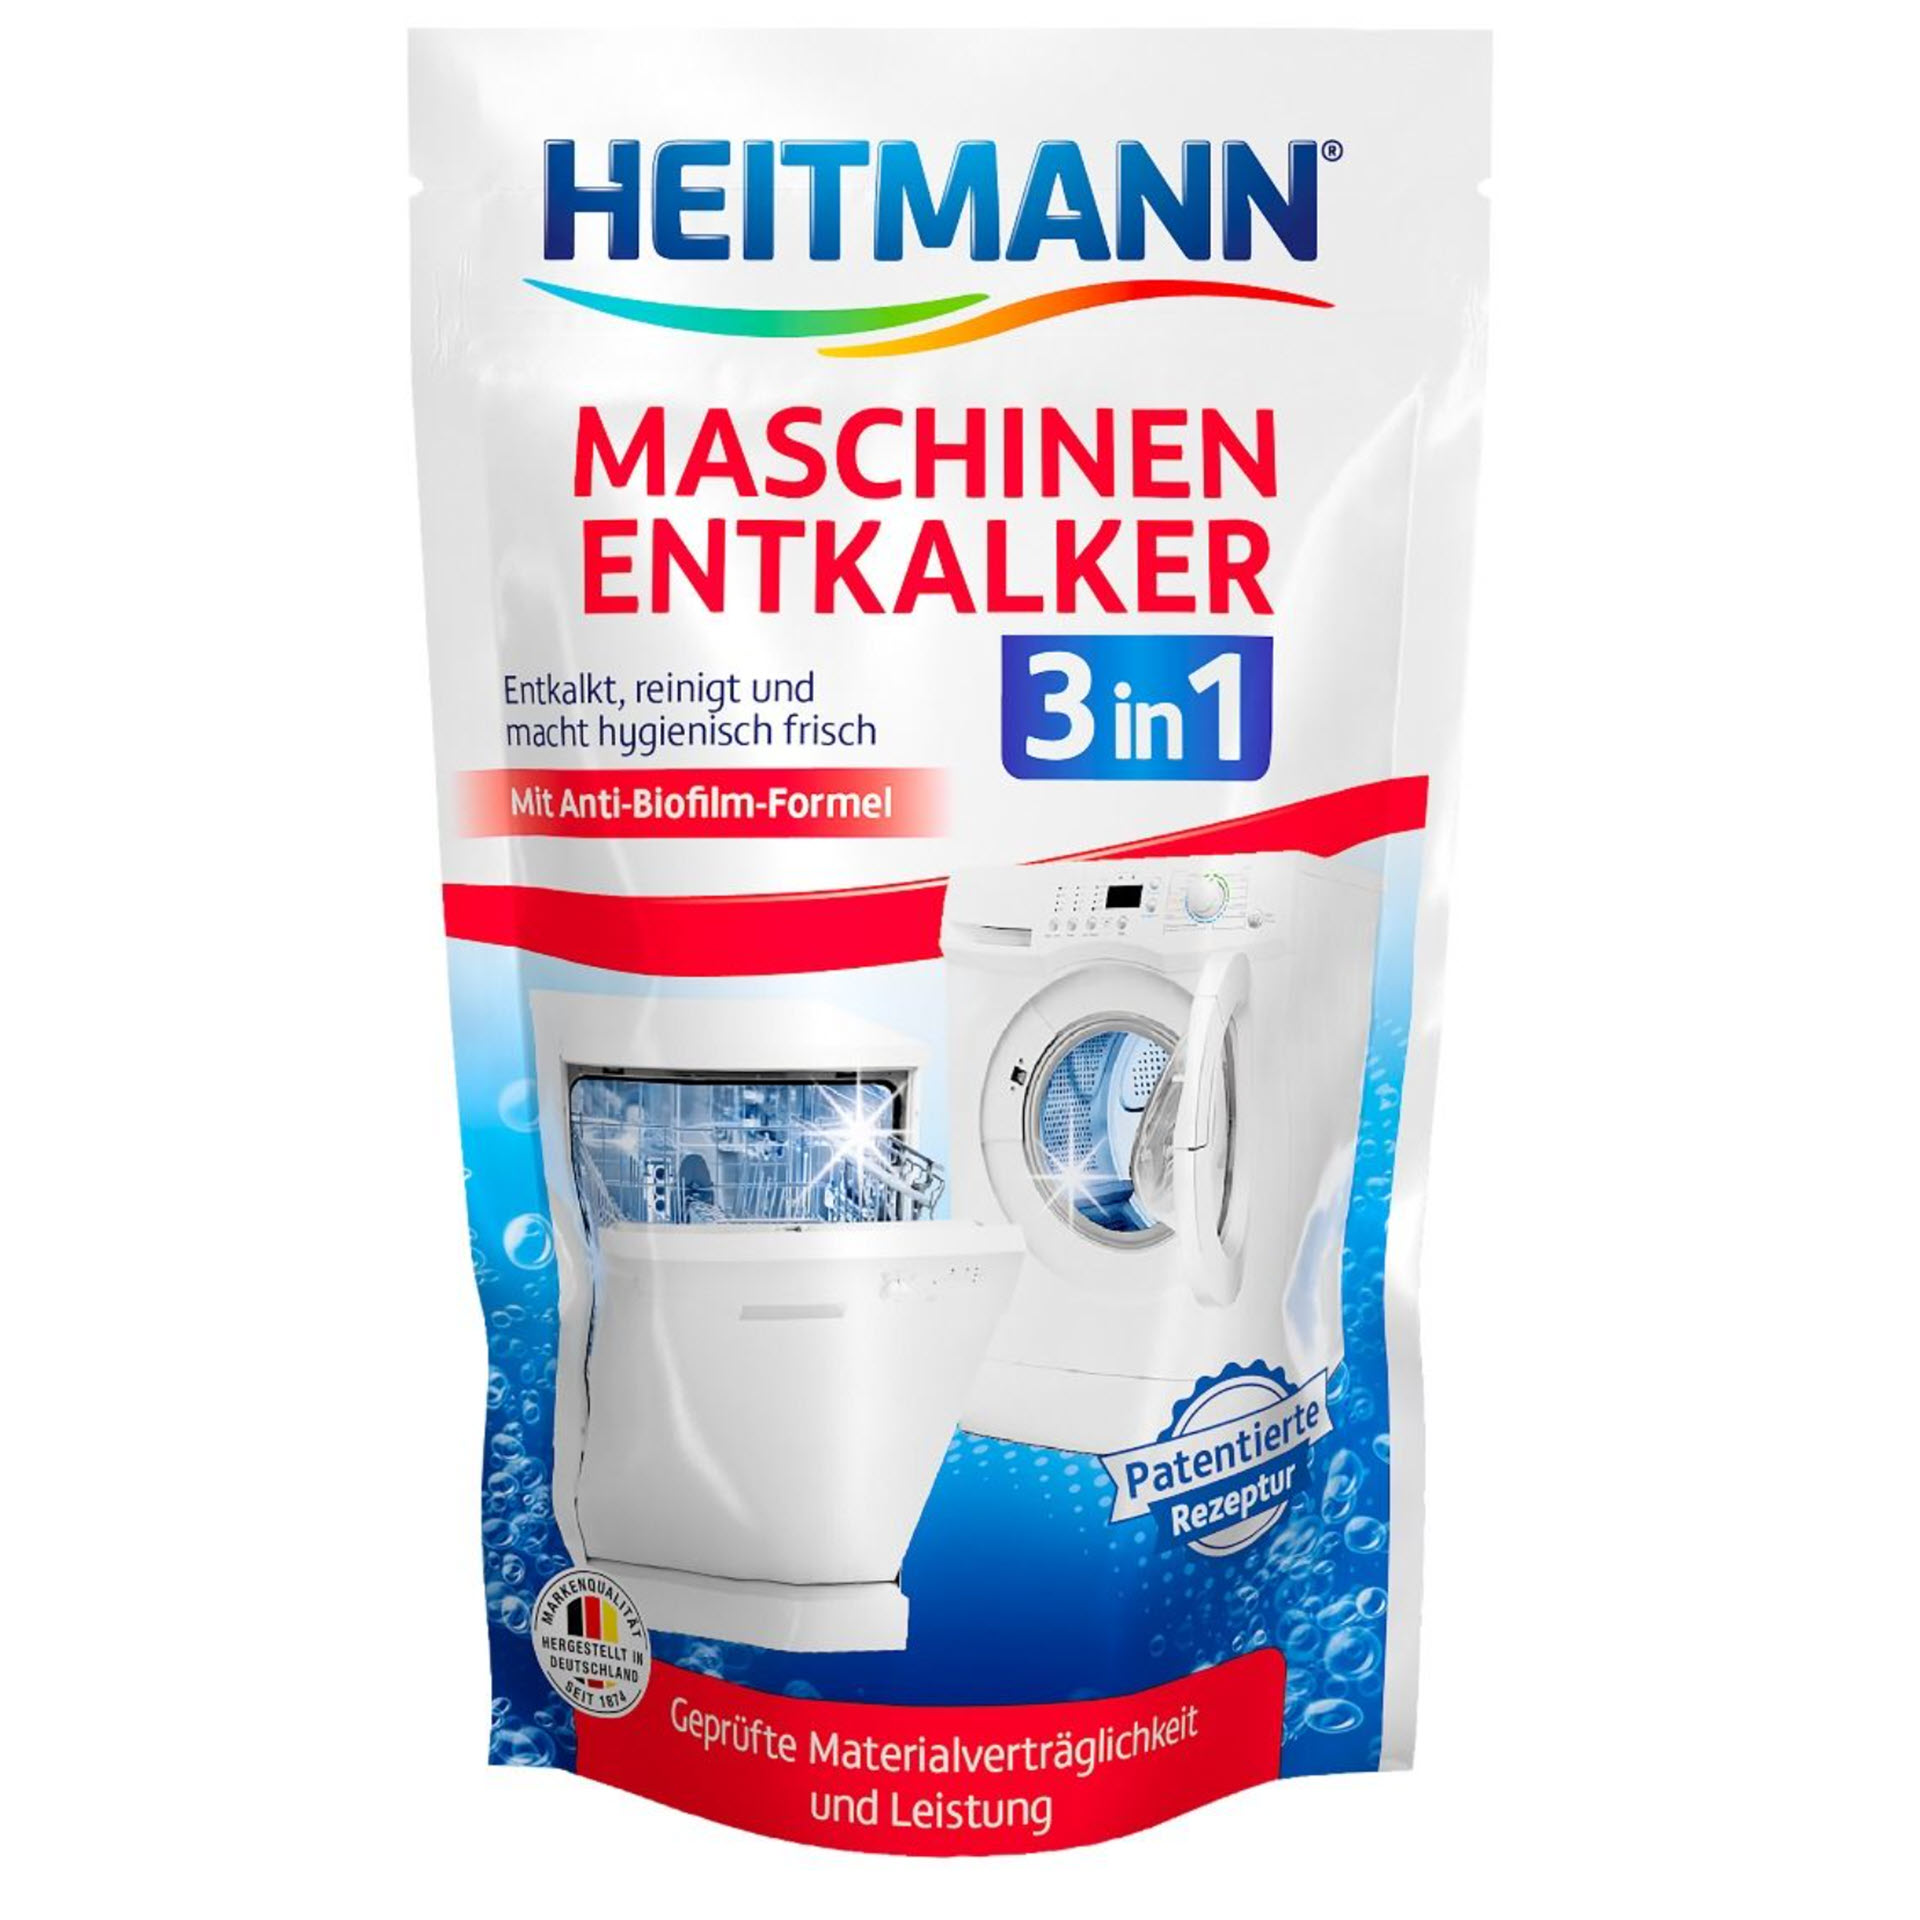 HEITMANN Maschinen-Entkalker 3 in 1 im 175 g Beutel